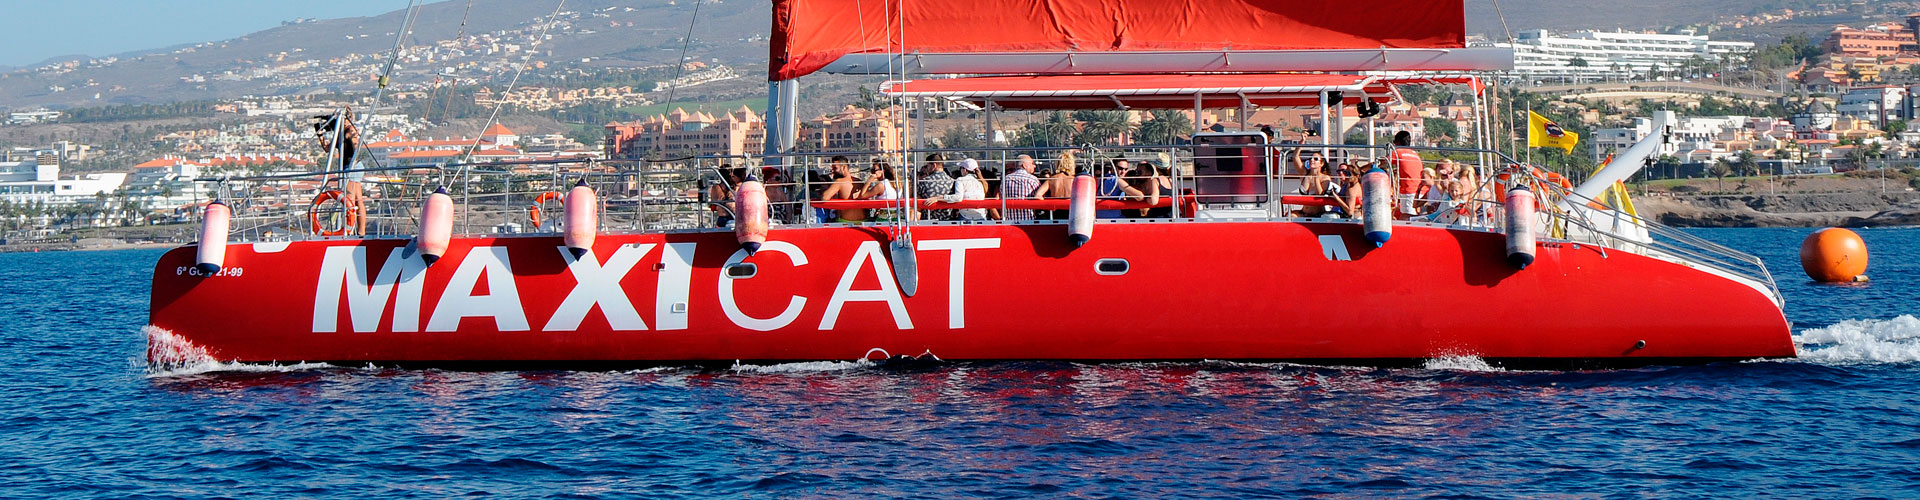 Catamaran Maxicat